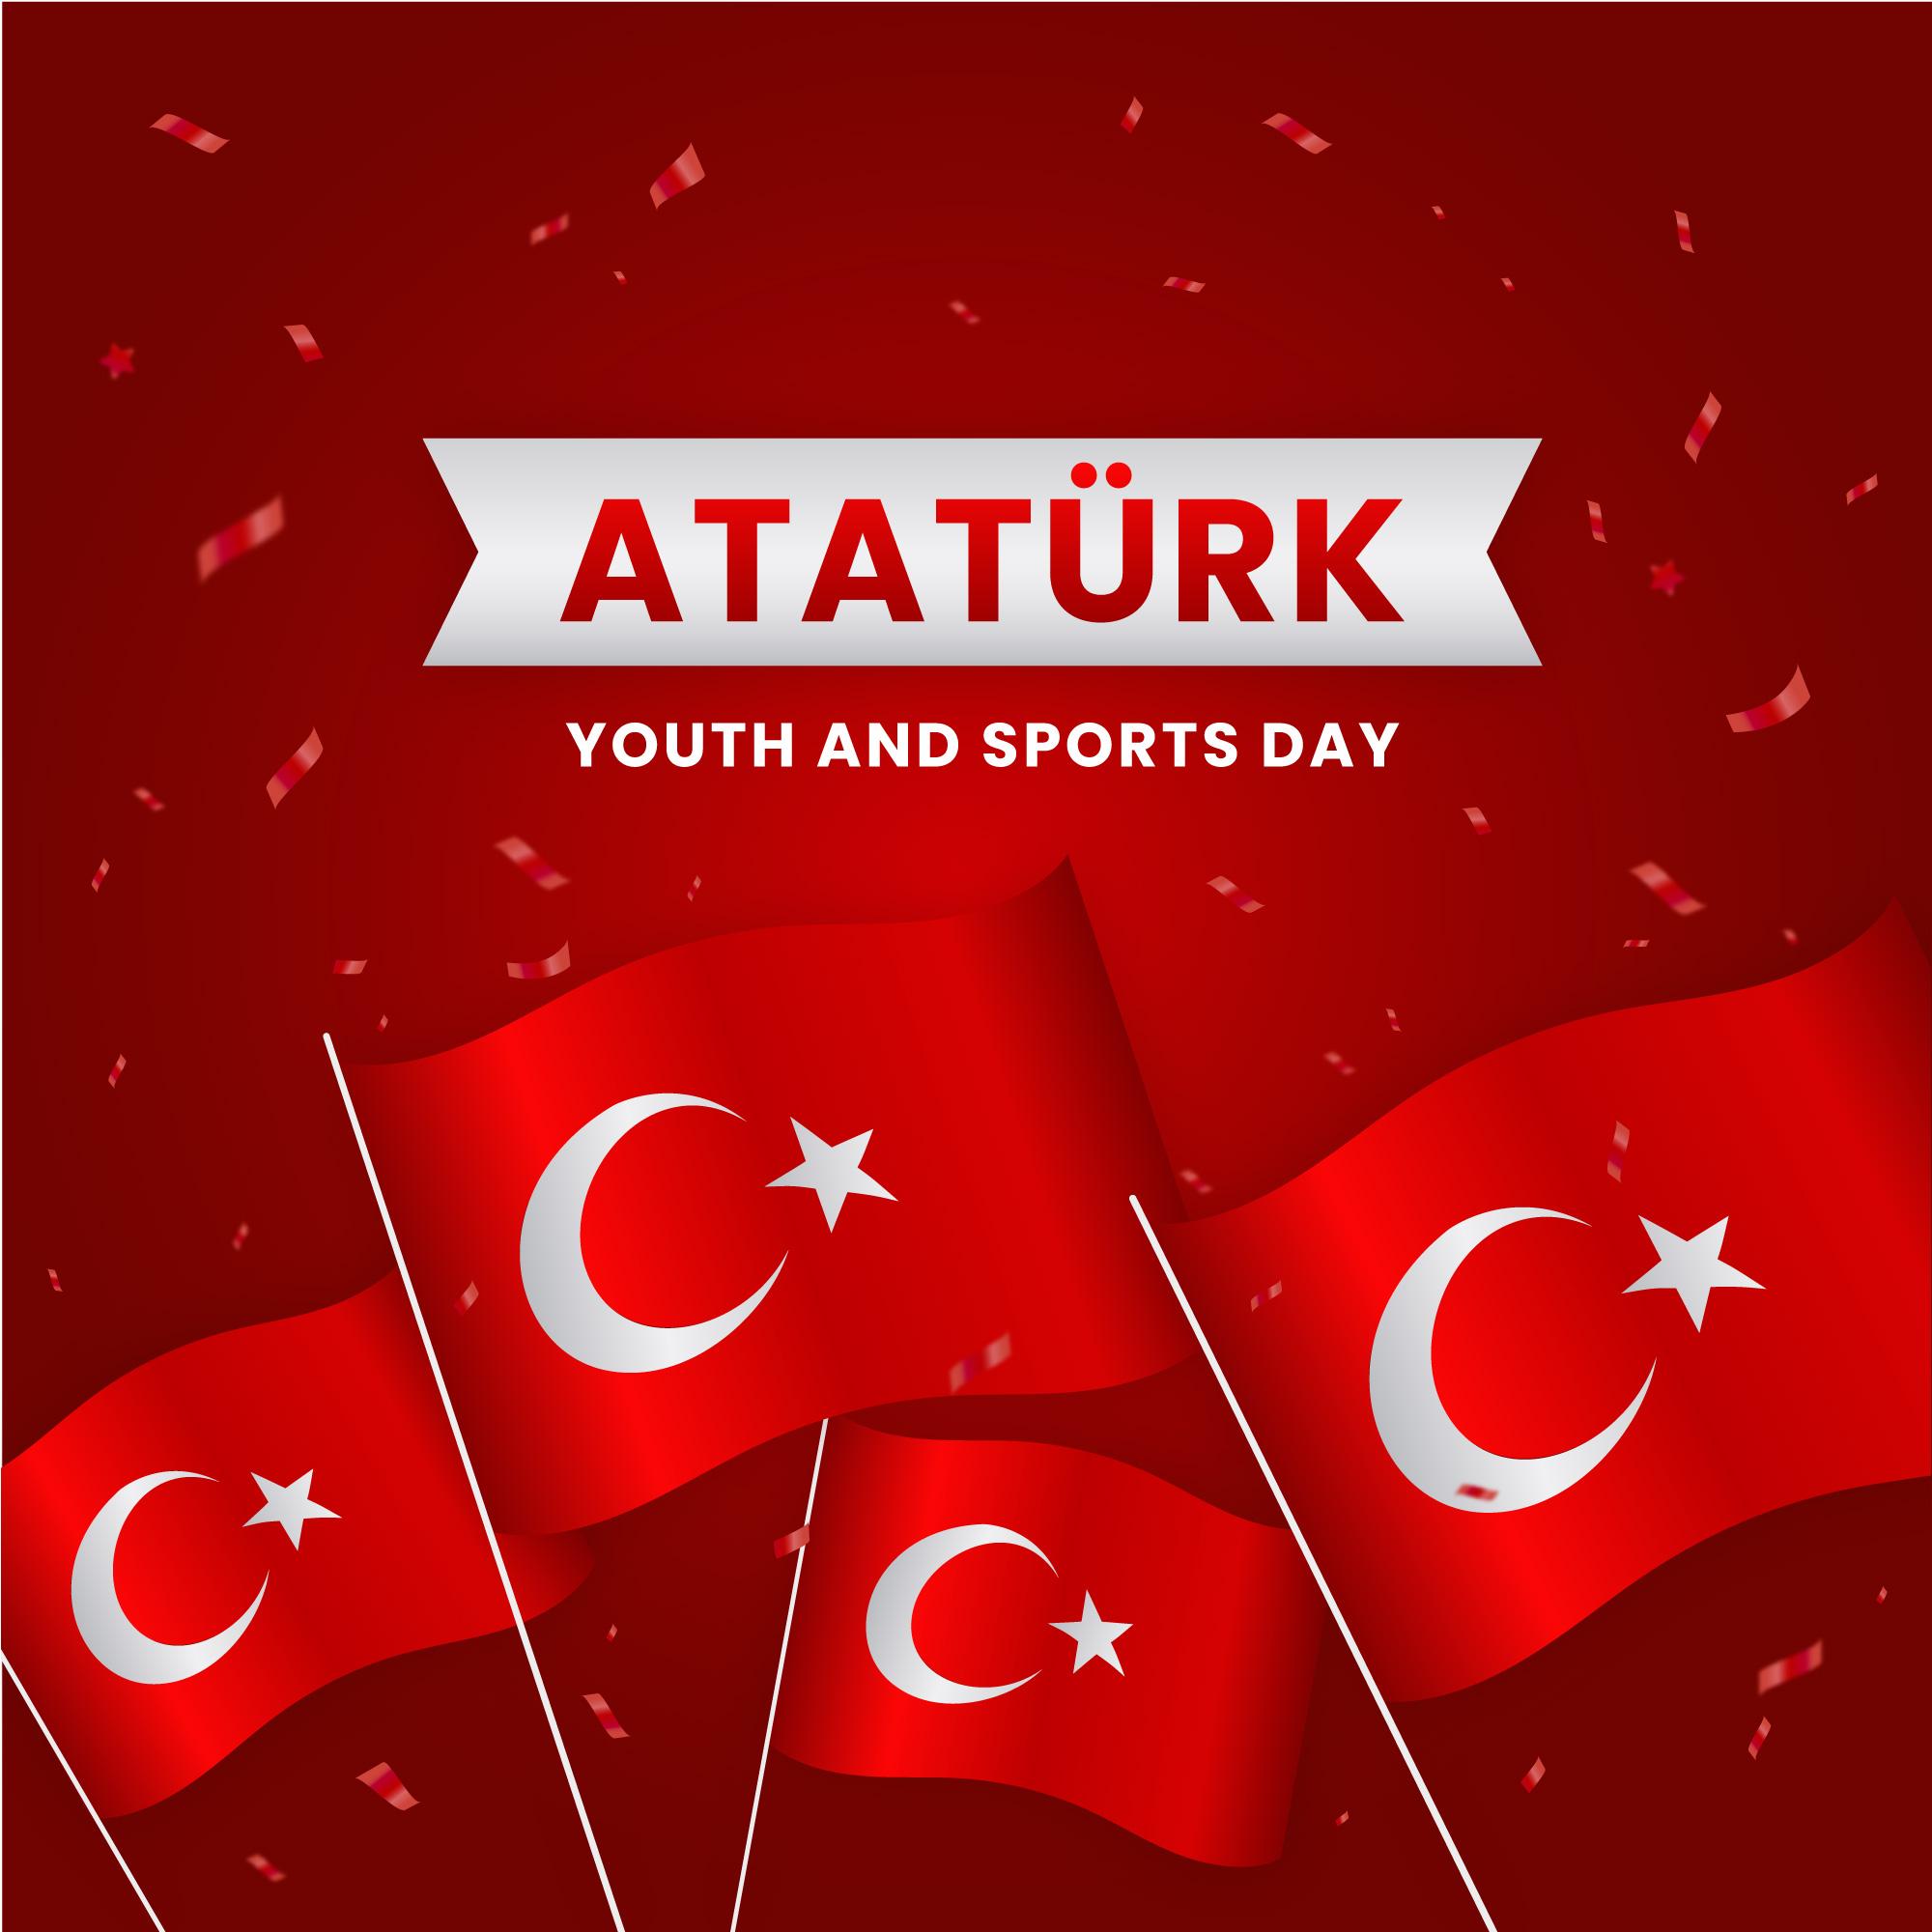 土耳其国旗插图0